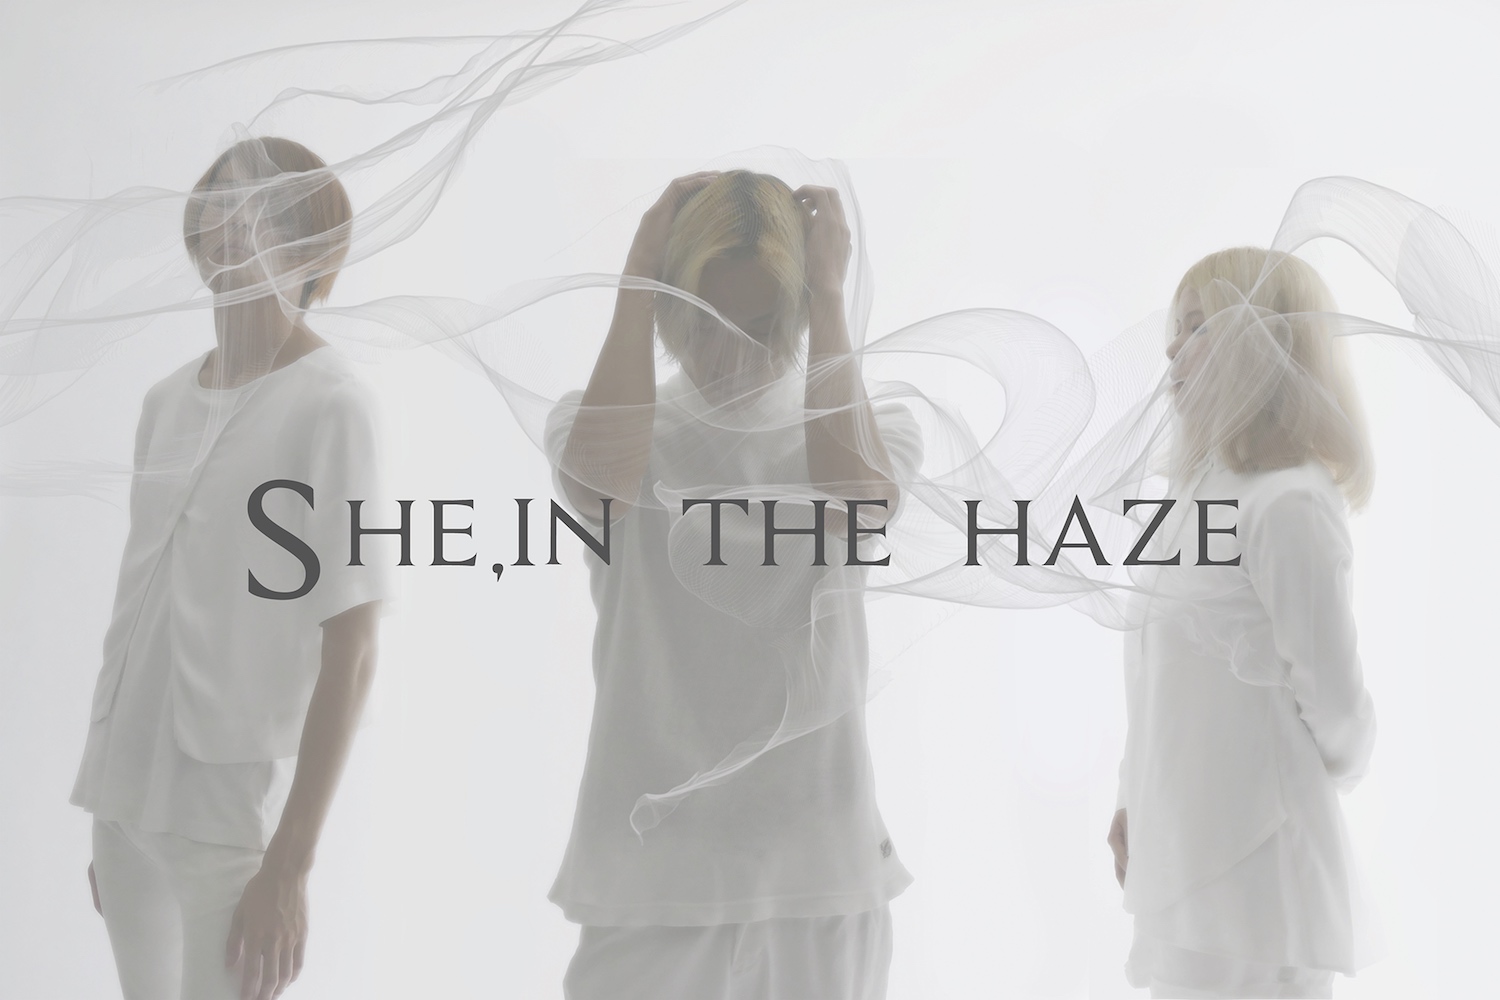 Shein-the-haze.jpg